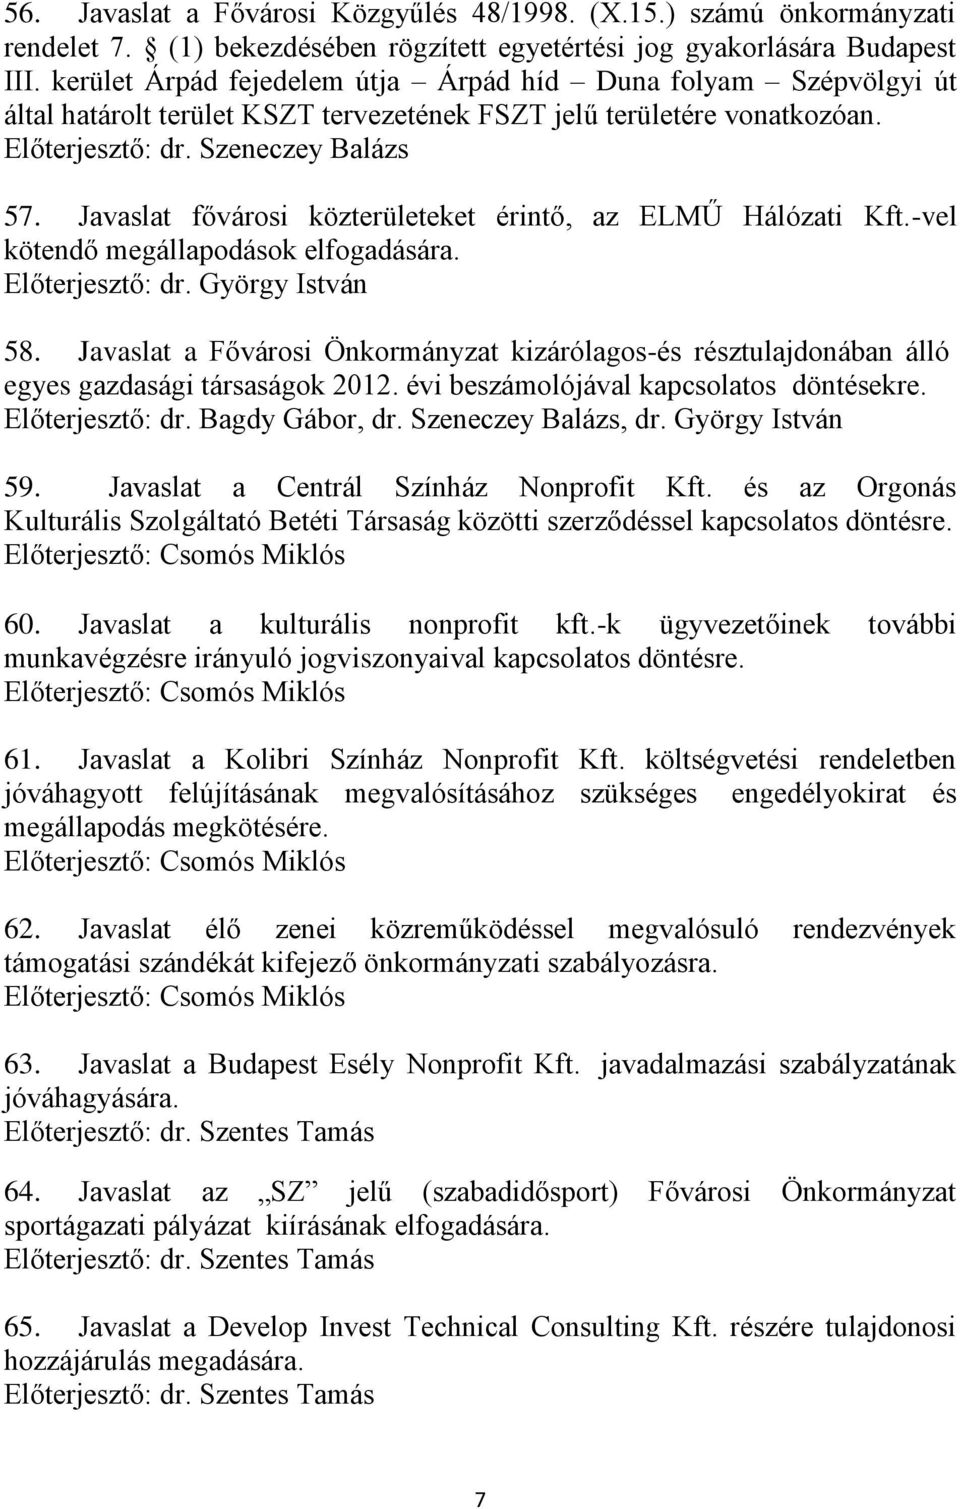 Javaslat fővárosi közterületeket érintő, az ELMŰ Hálózati Kft.-vel kötendő megállapodások elfogadására. 58.